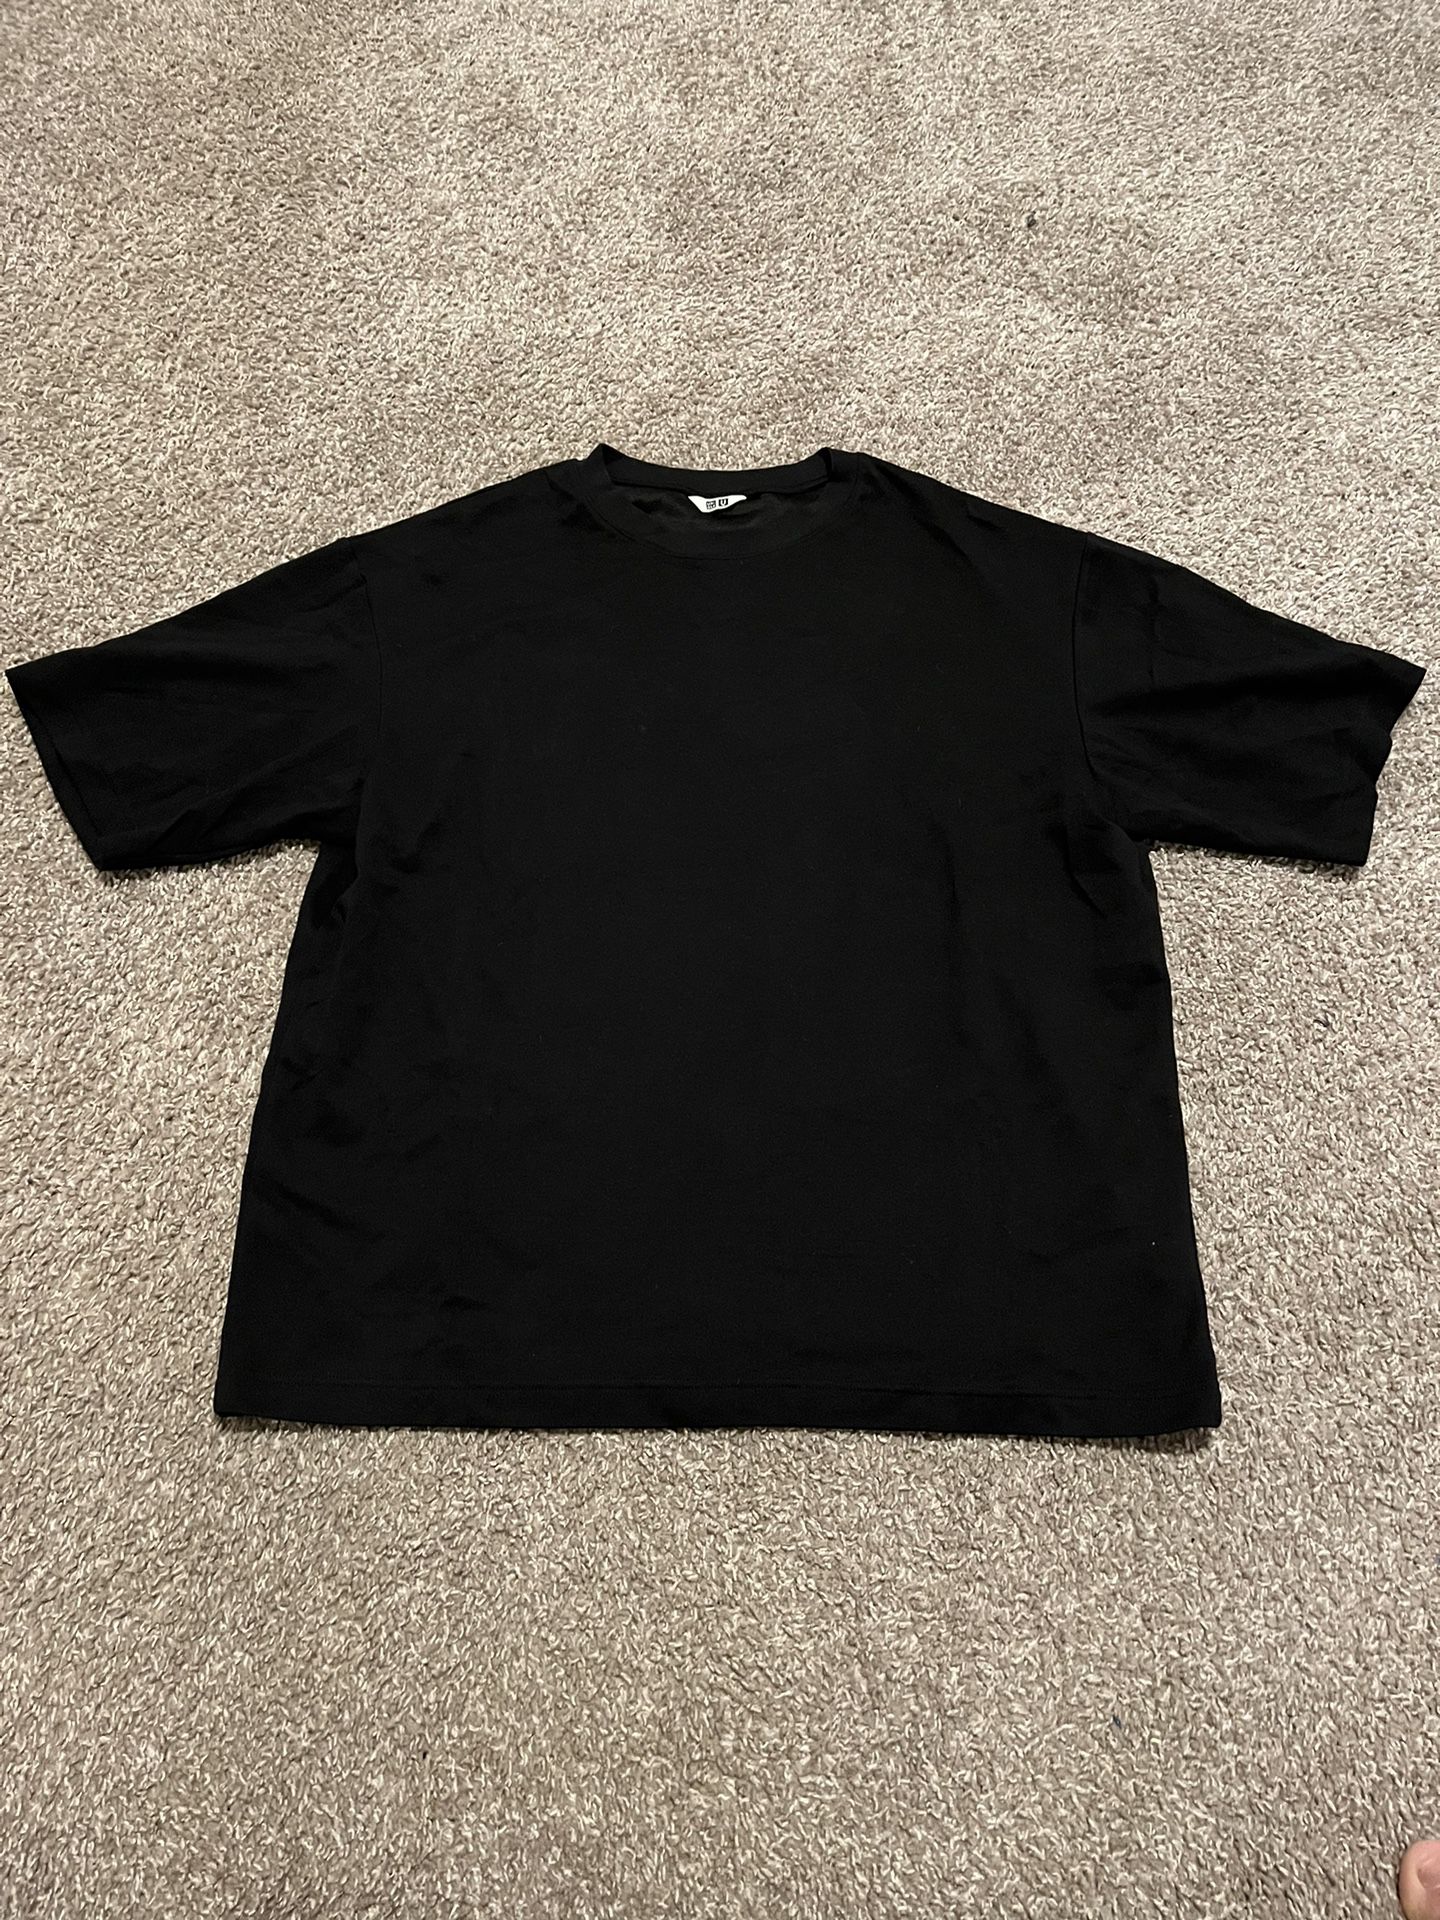 Uniqlo Black T Shirt 